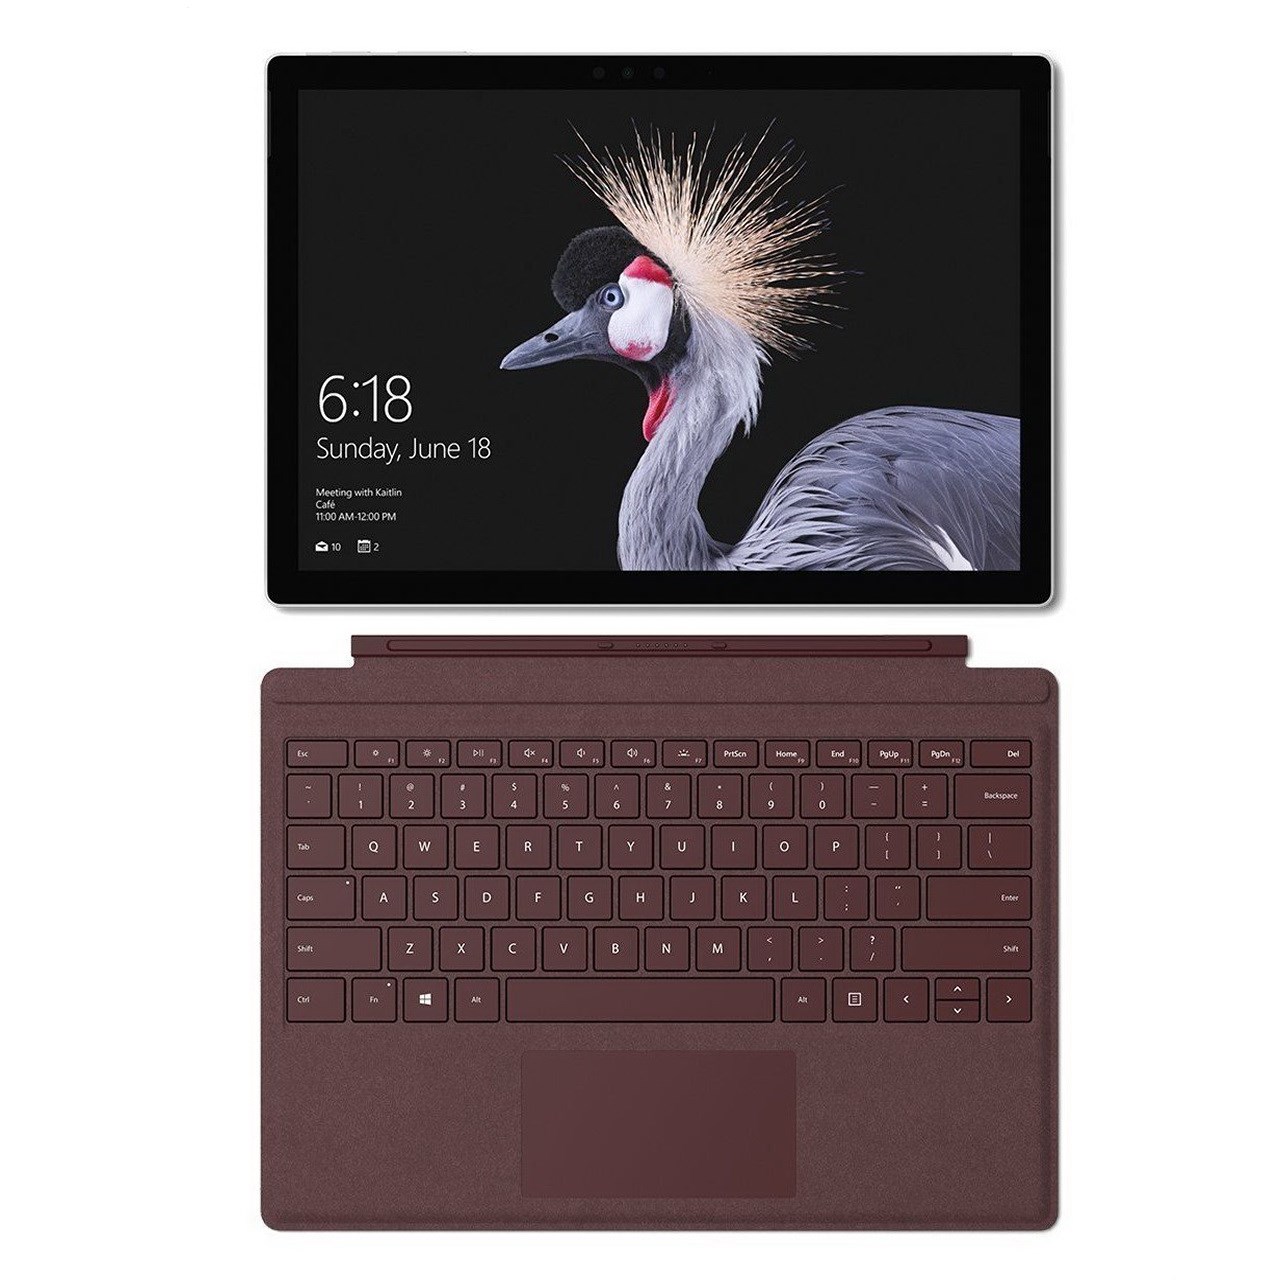 تبلت مایکروسافت مدل- Surface Pro 2017 - B به همراه کیبورد Burgundy Signature  و کیف Maroo Sleeve - ظرفیت 128 گیگابایت